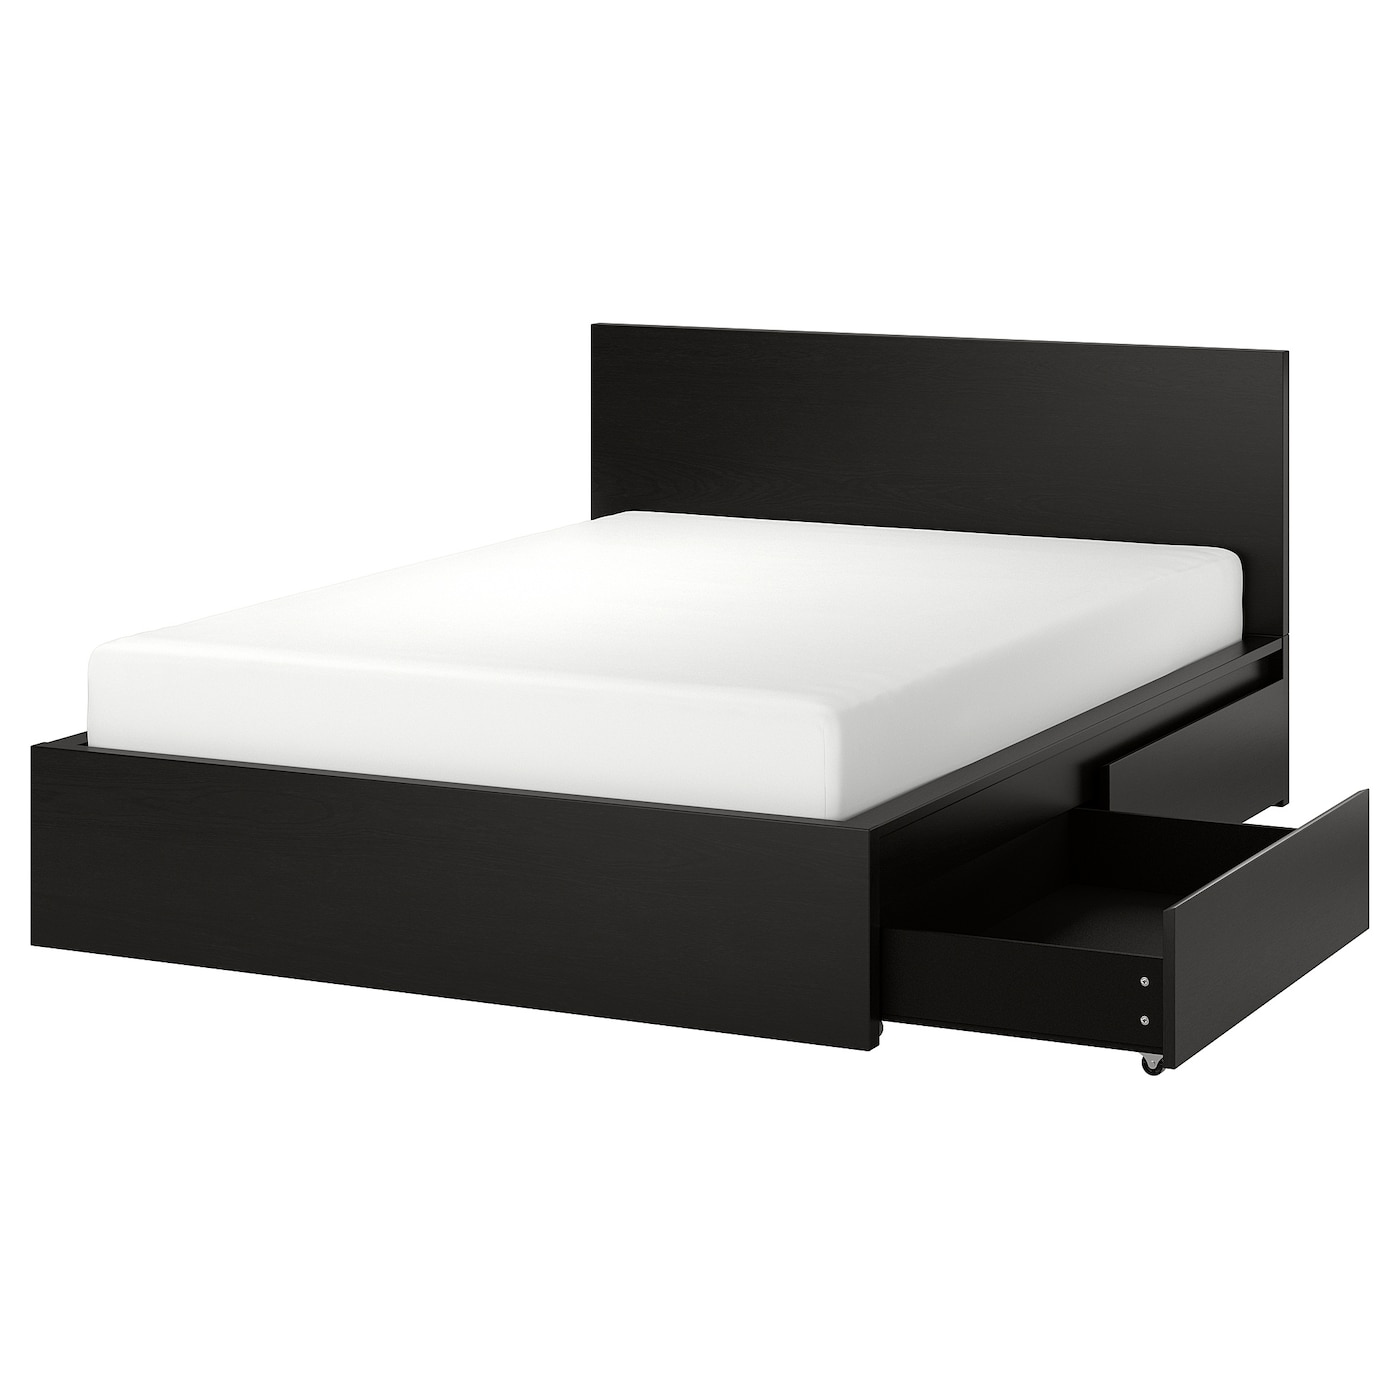 Каркас кровати с 4 ящиками для хранения - IKEA MALM, 200х160 см, черный, МАЛЬМ ИКЕА